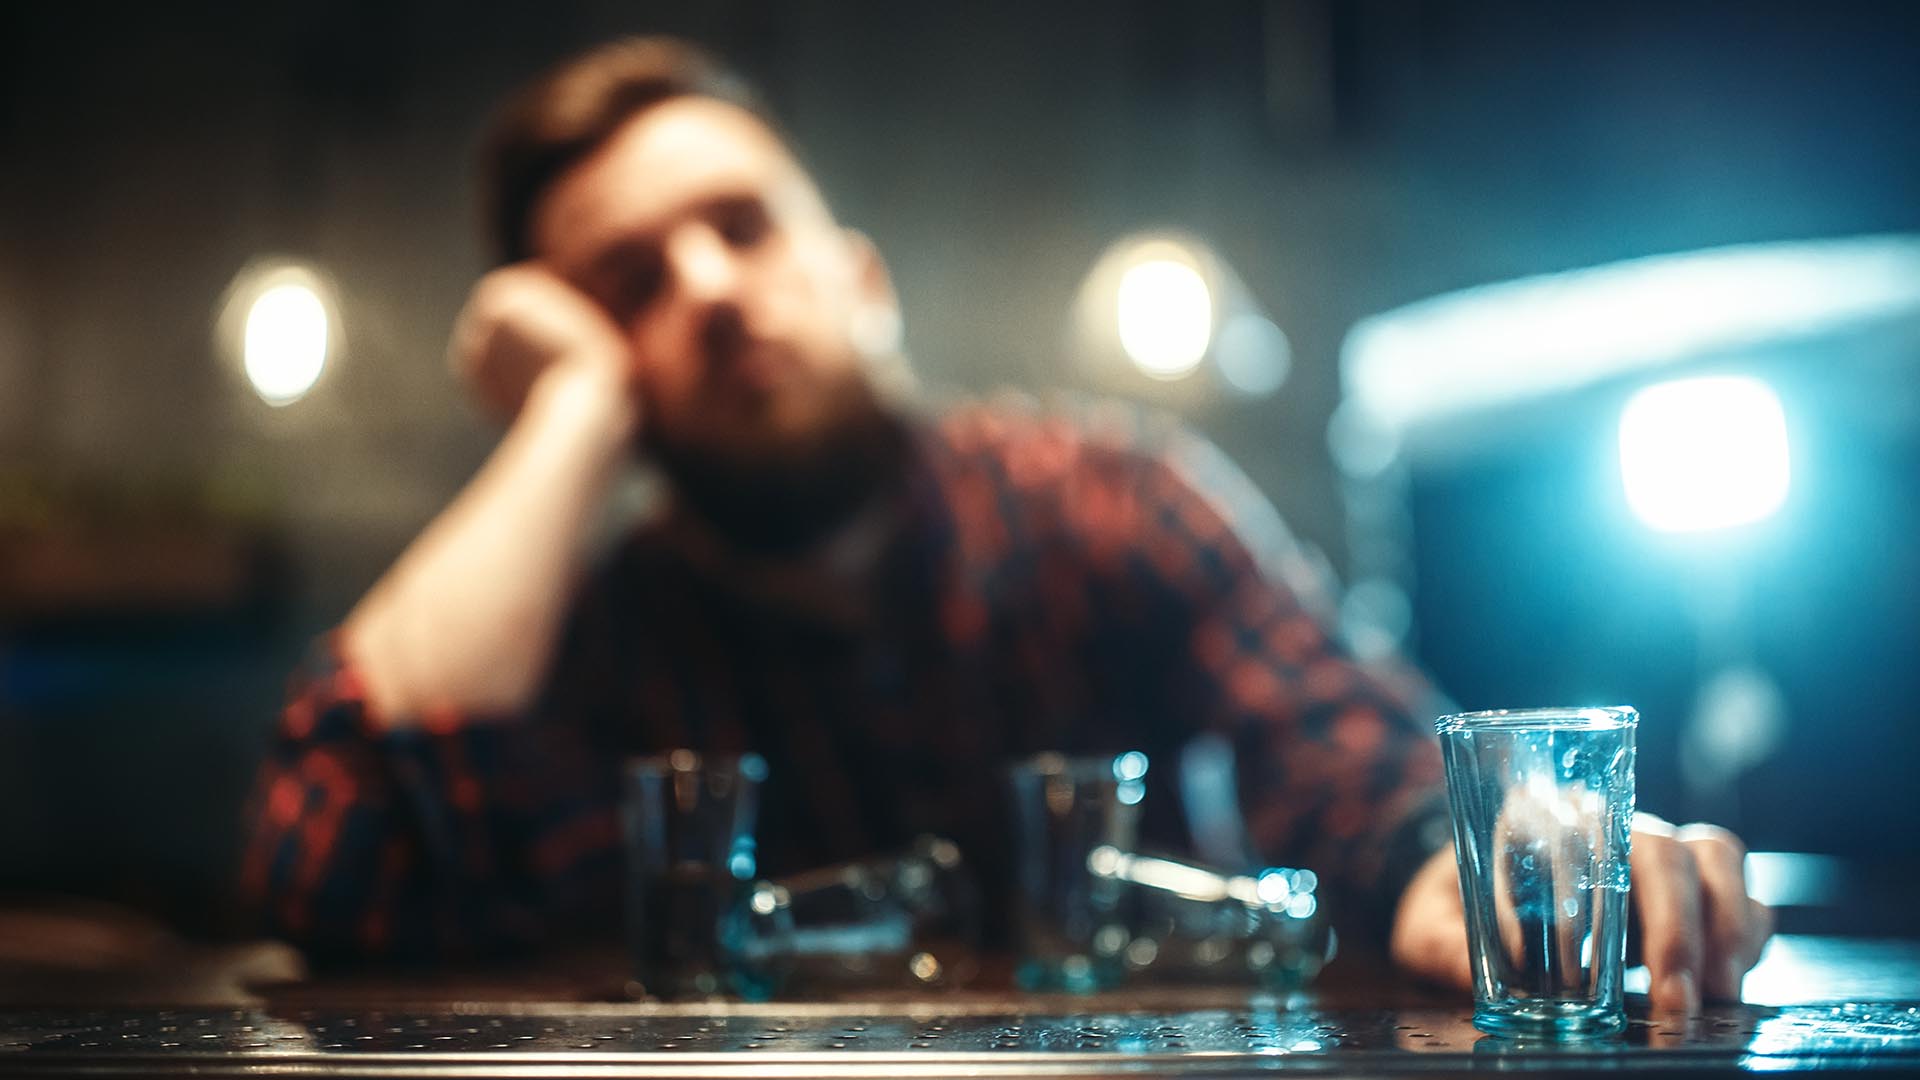  El alcohol es la droga legal más consumida entre los jóvenes (Getty Images)